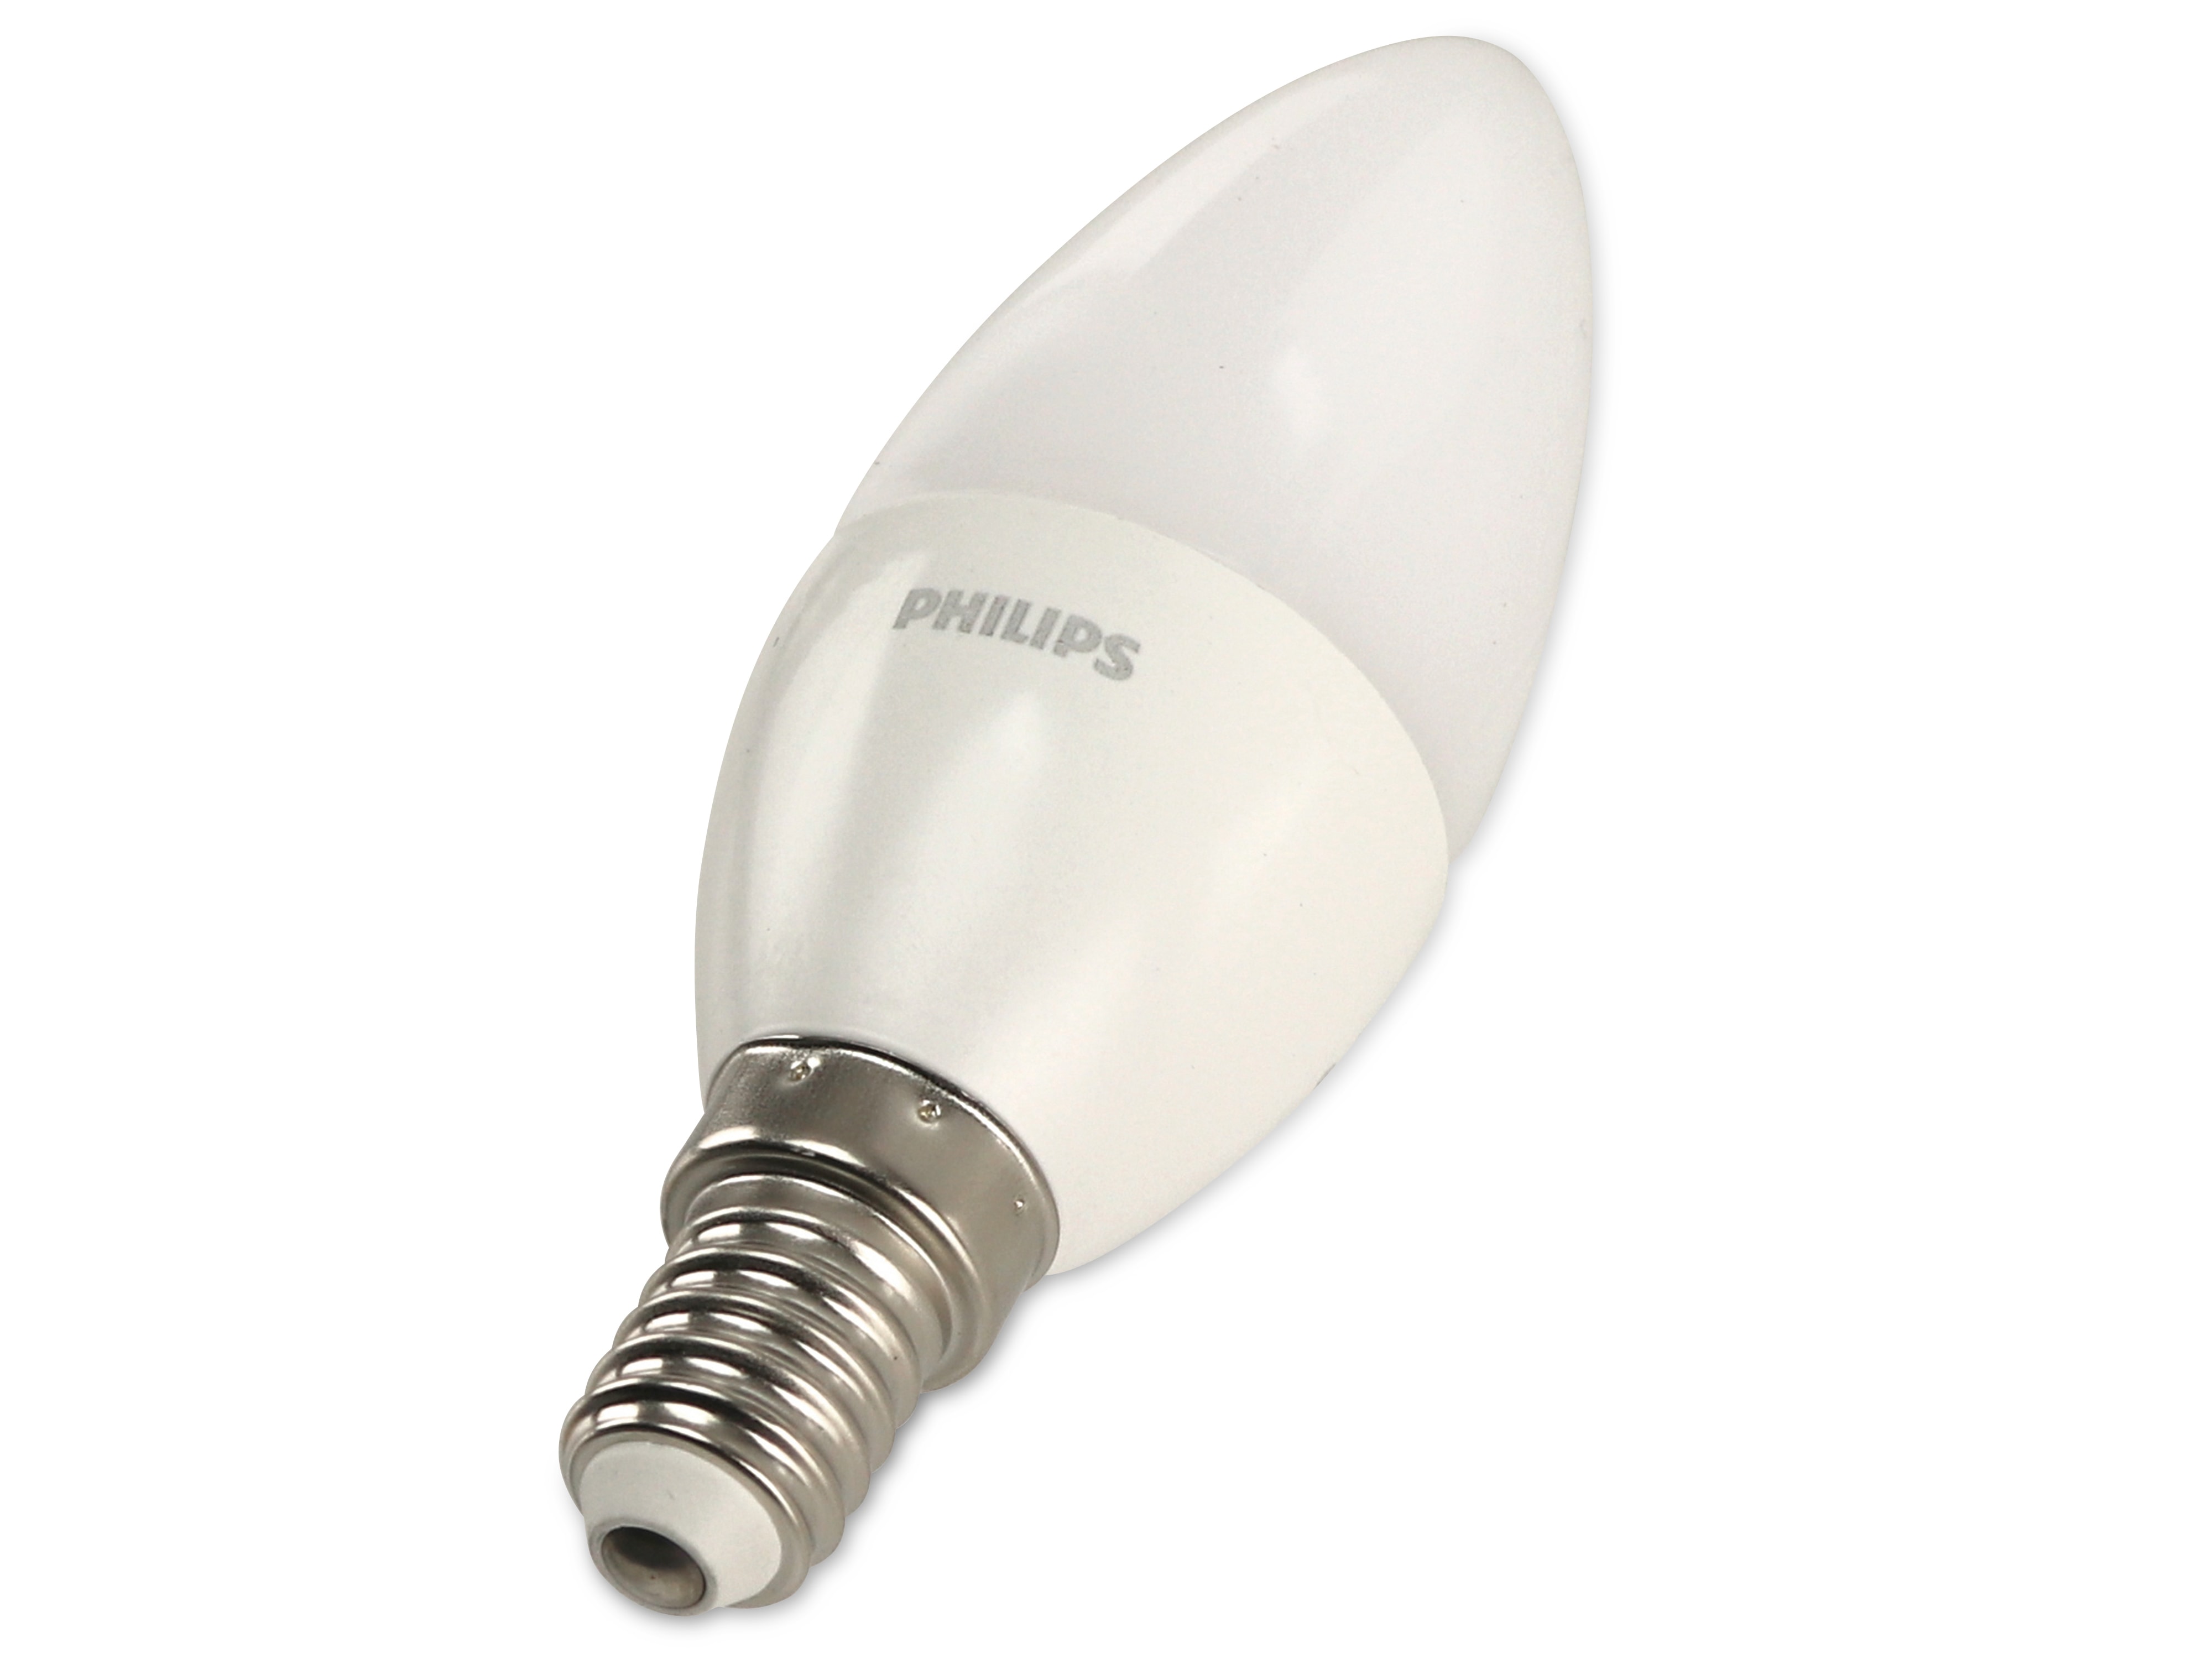 LED-Lampe Philips, Kerzenform, E14, EEK: F, 5 W, 470 lm, 4 Stück